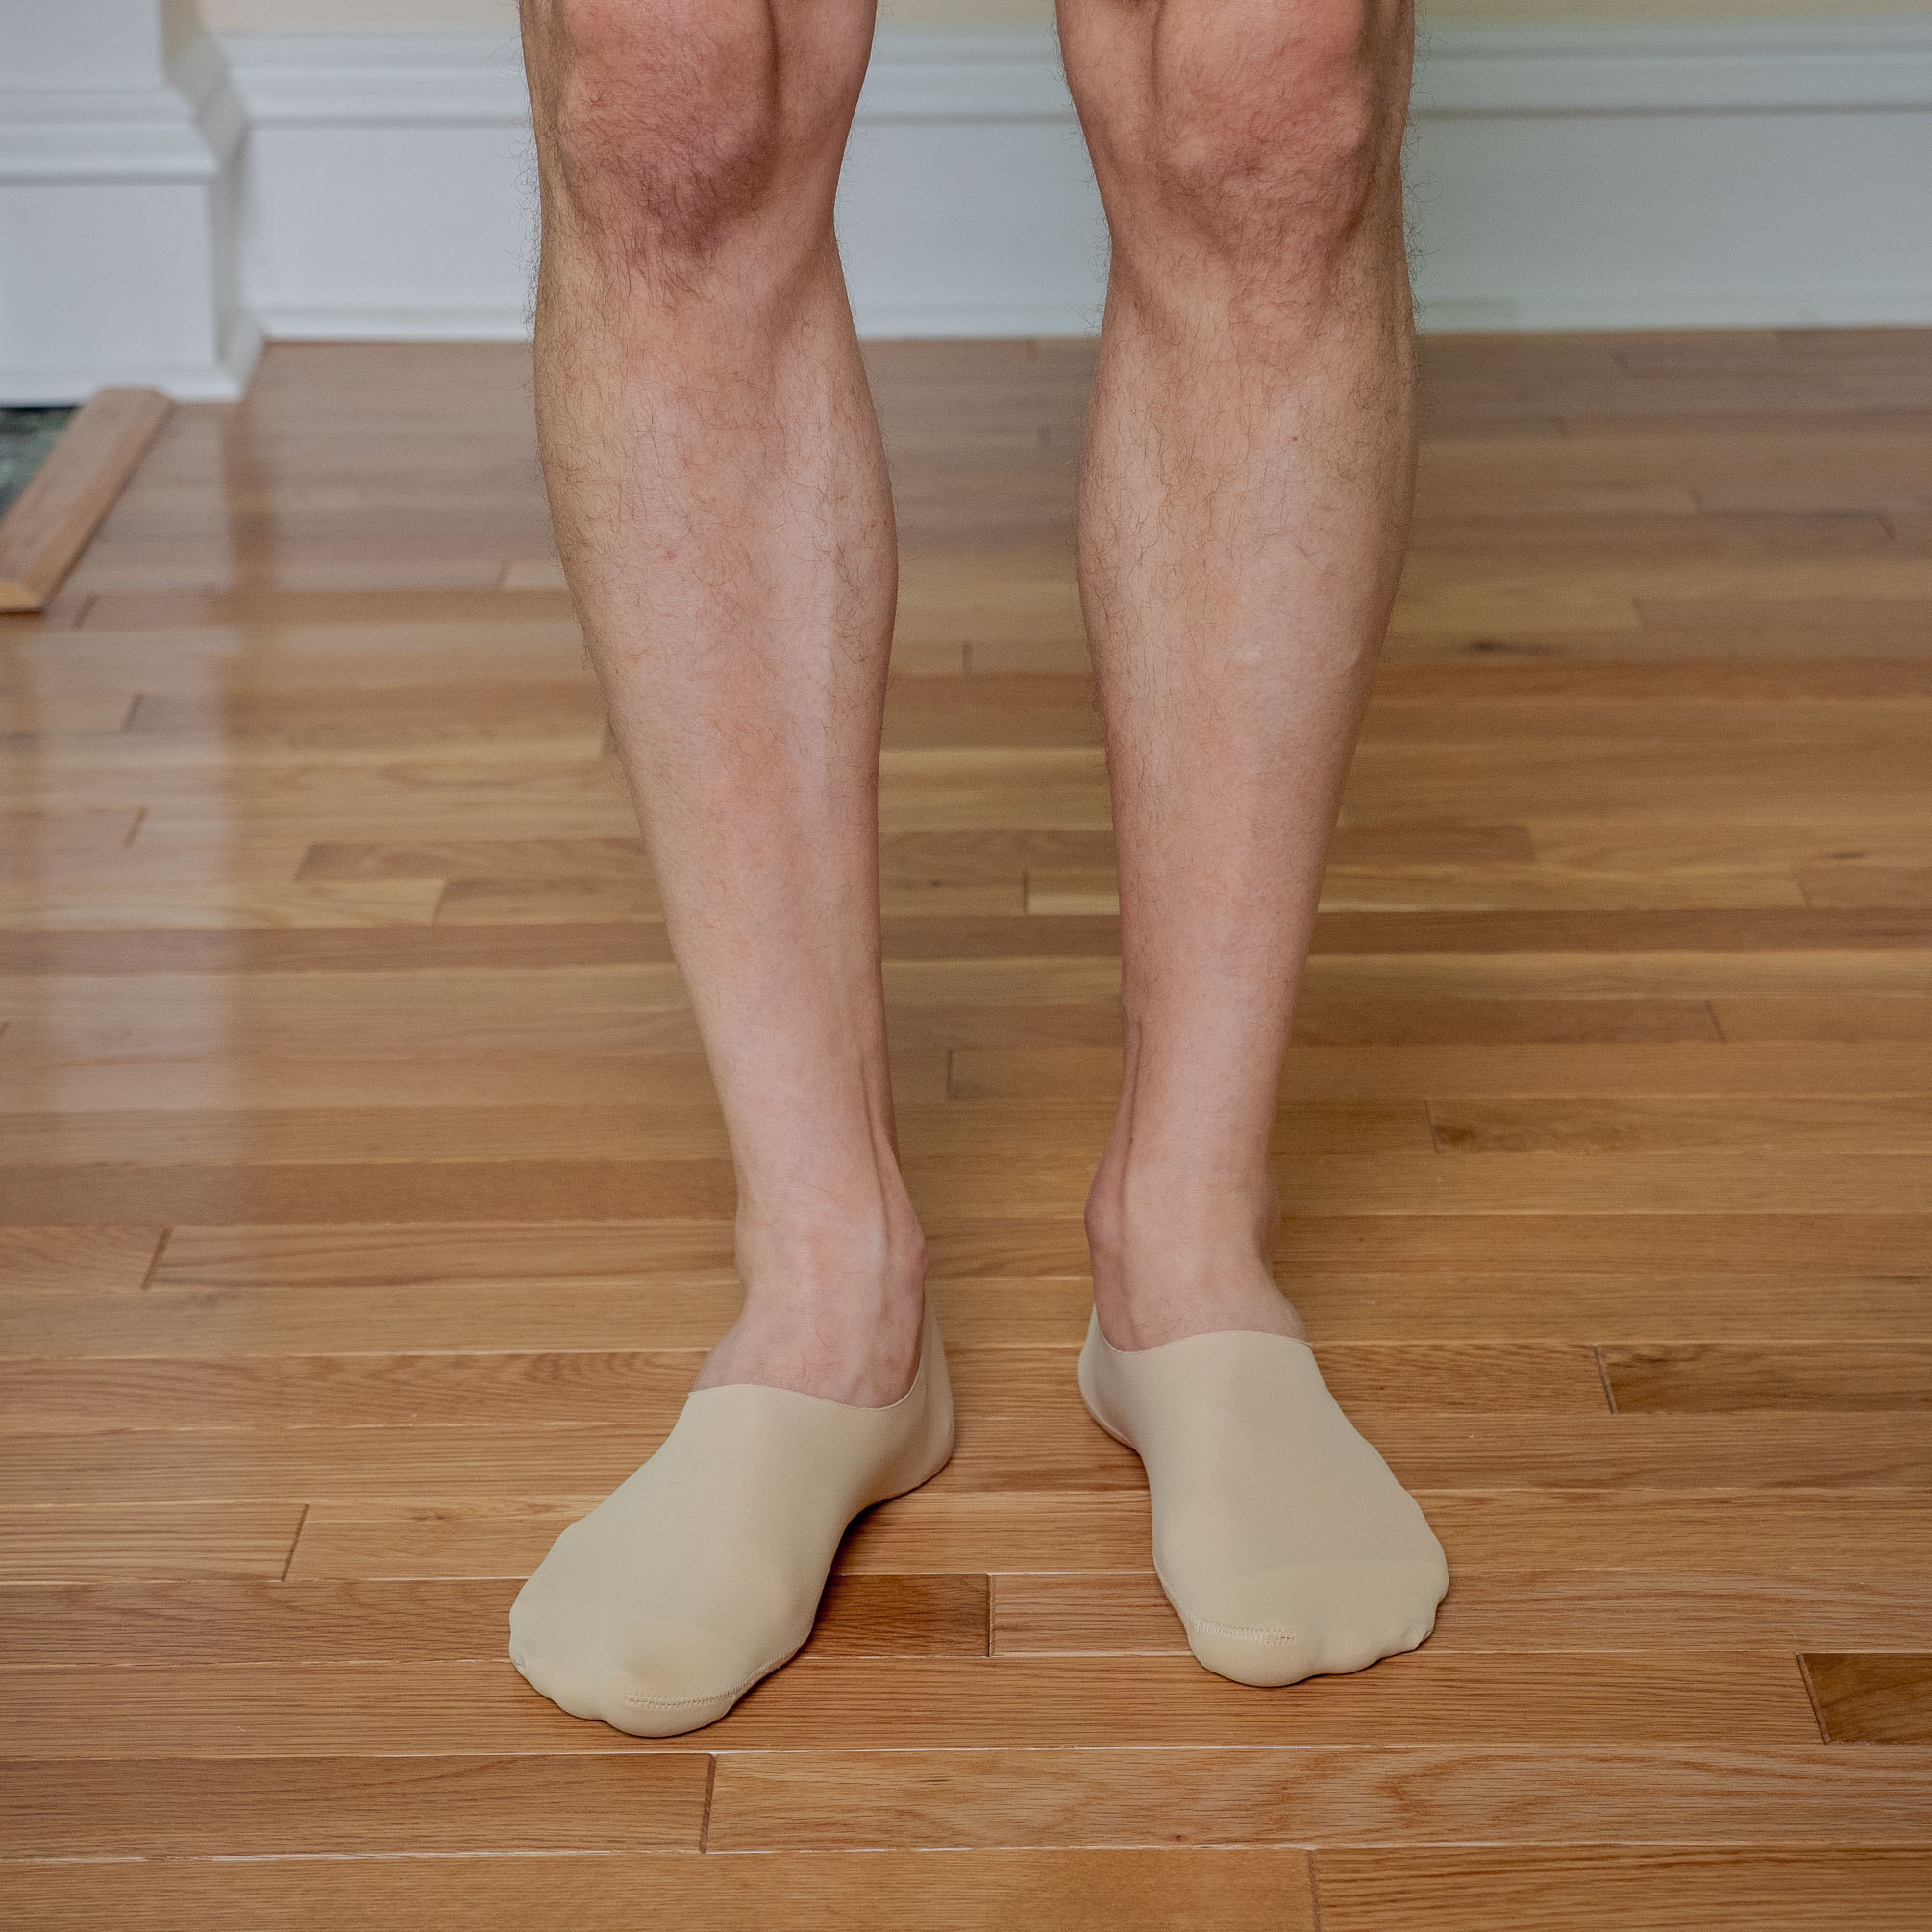 UNIQLO HAUL] Men's Low Cut No Show Socks Review